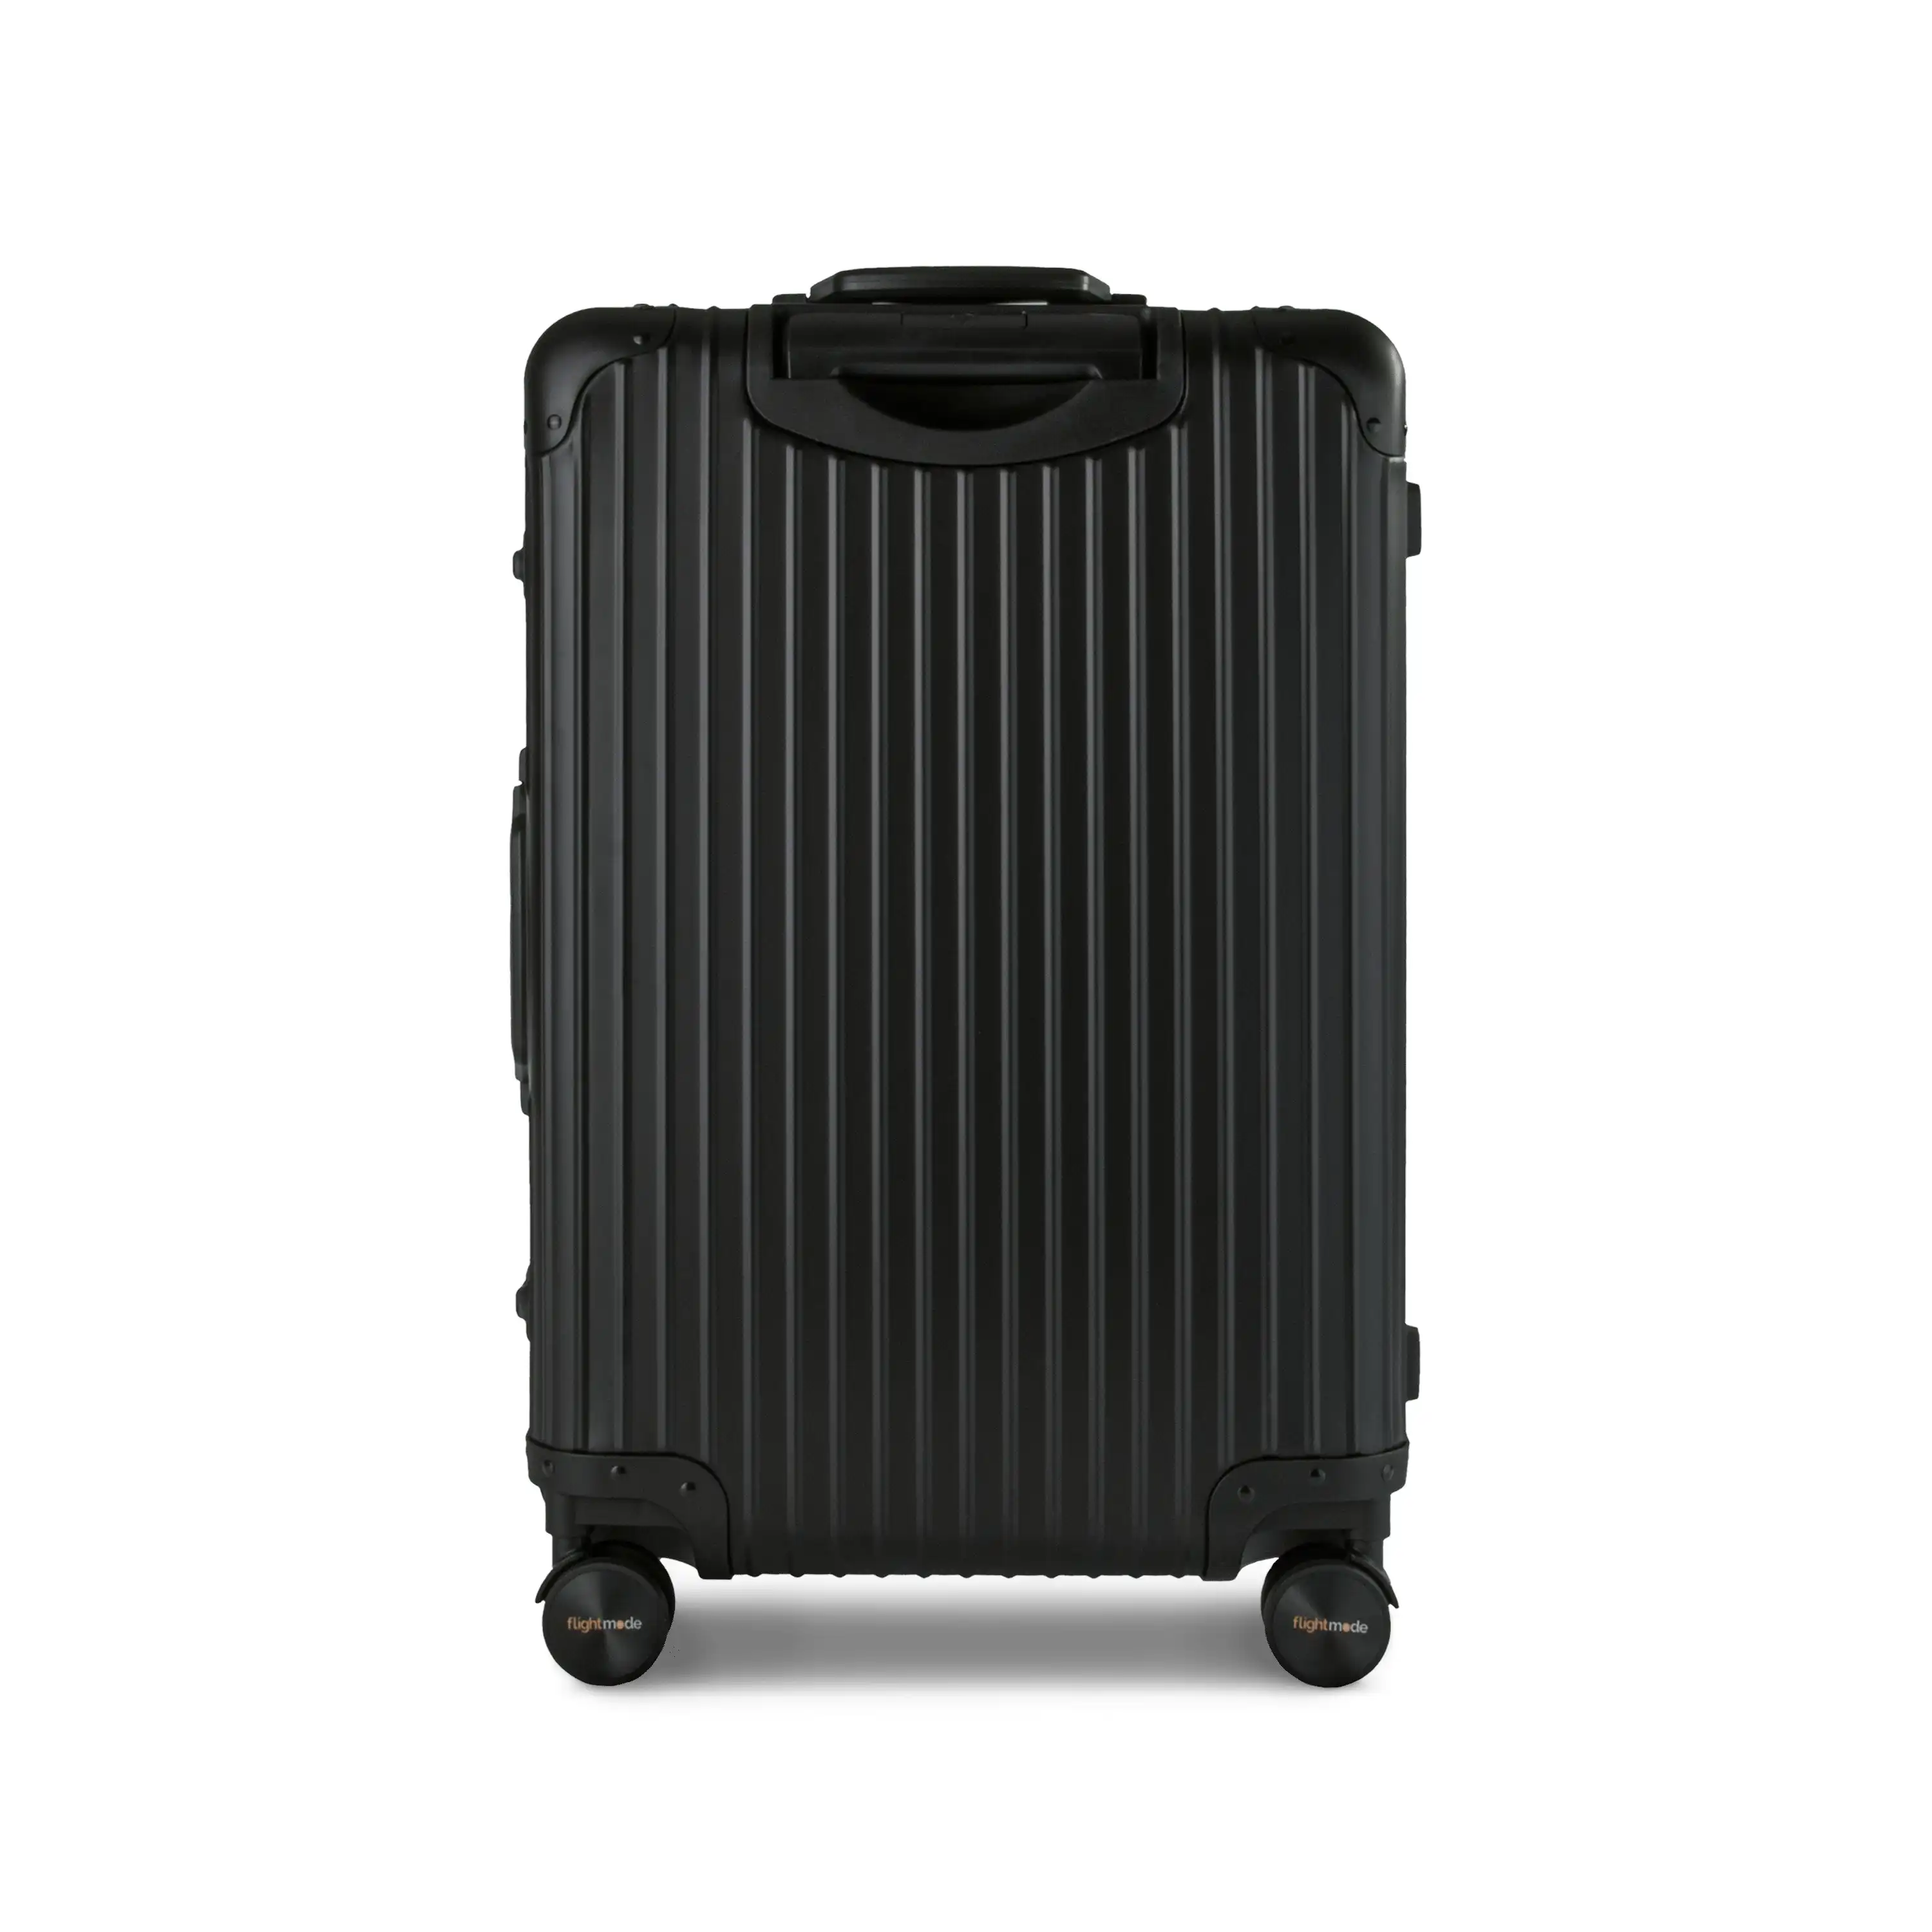 Flightmode Travel Suitcase Large